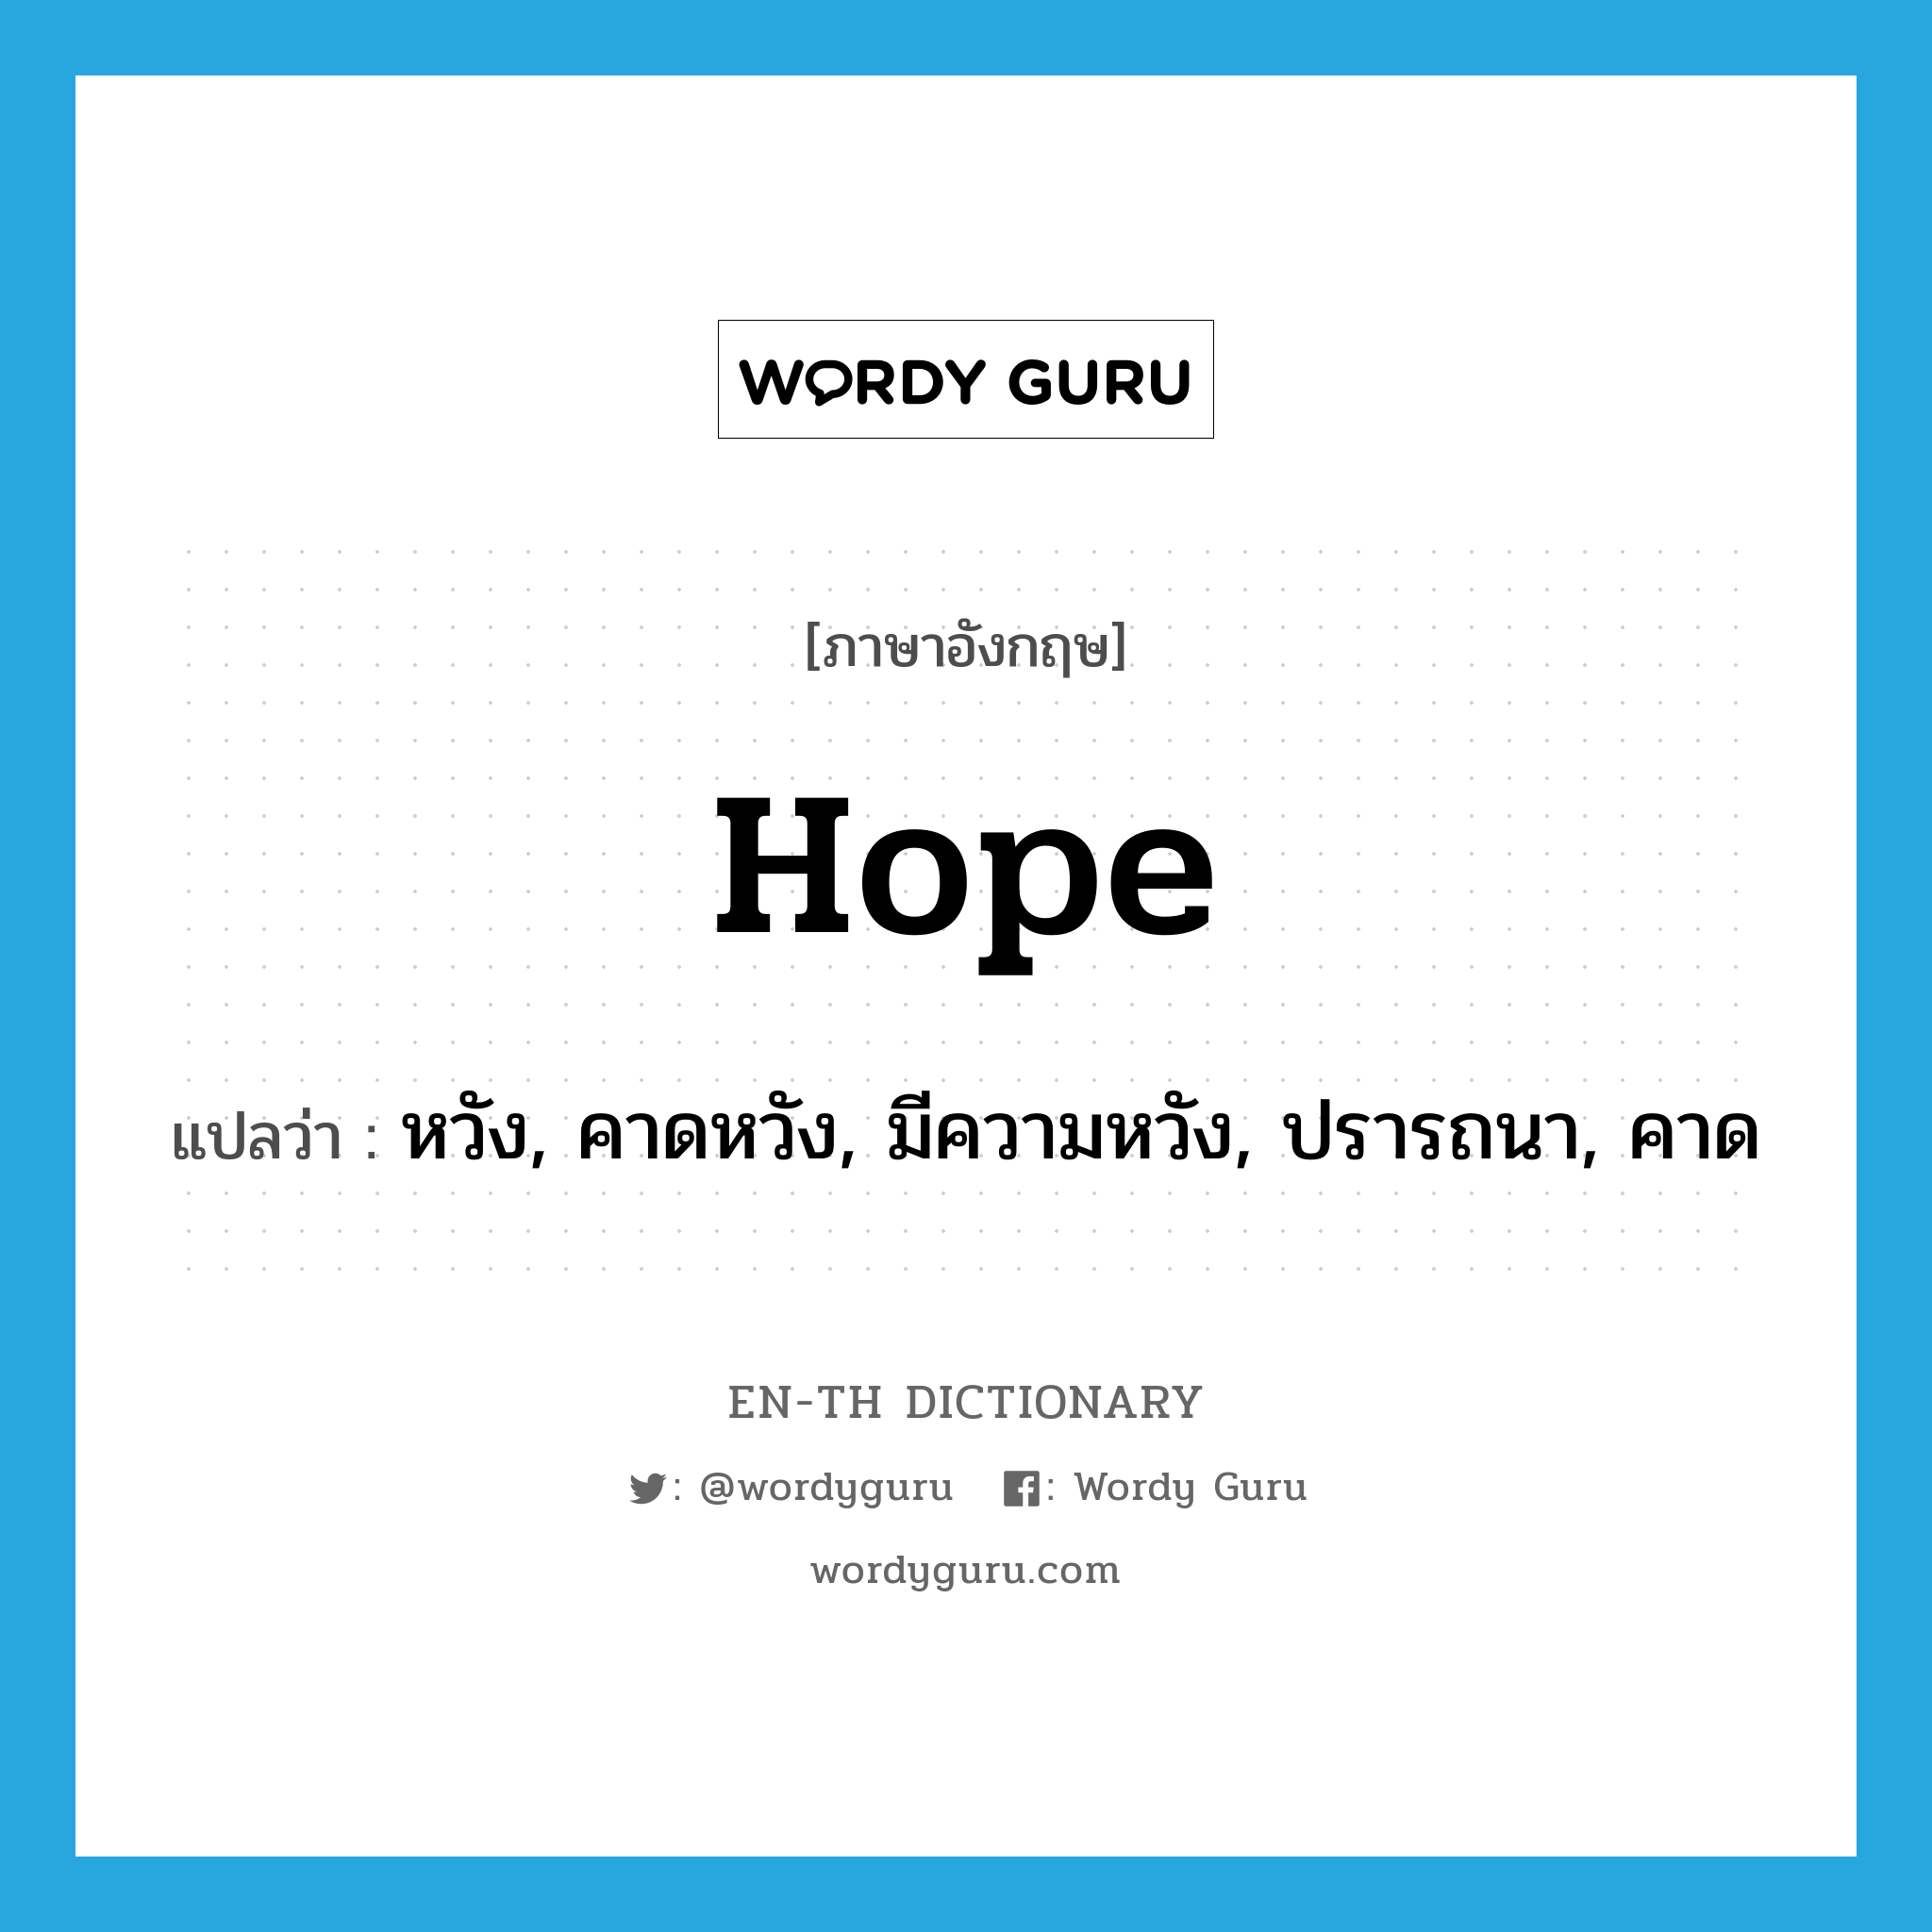 หวัง, คาดหวัง, มีความหวัง, ปรารถนา, คาด ภาษาอังกฤษ?, คำศัพท์ภาษาอังกฤษ หวัง, คาดหวัง, มีความหวัง, ปรารถนา, คาด แปลว่า hope ประเภท VT หมวด VT